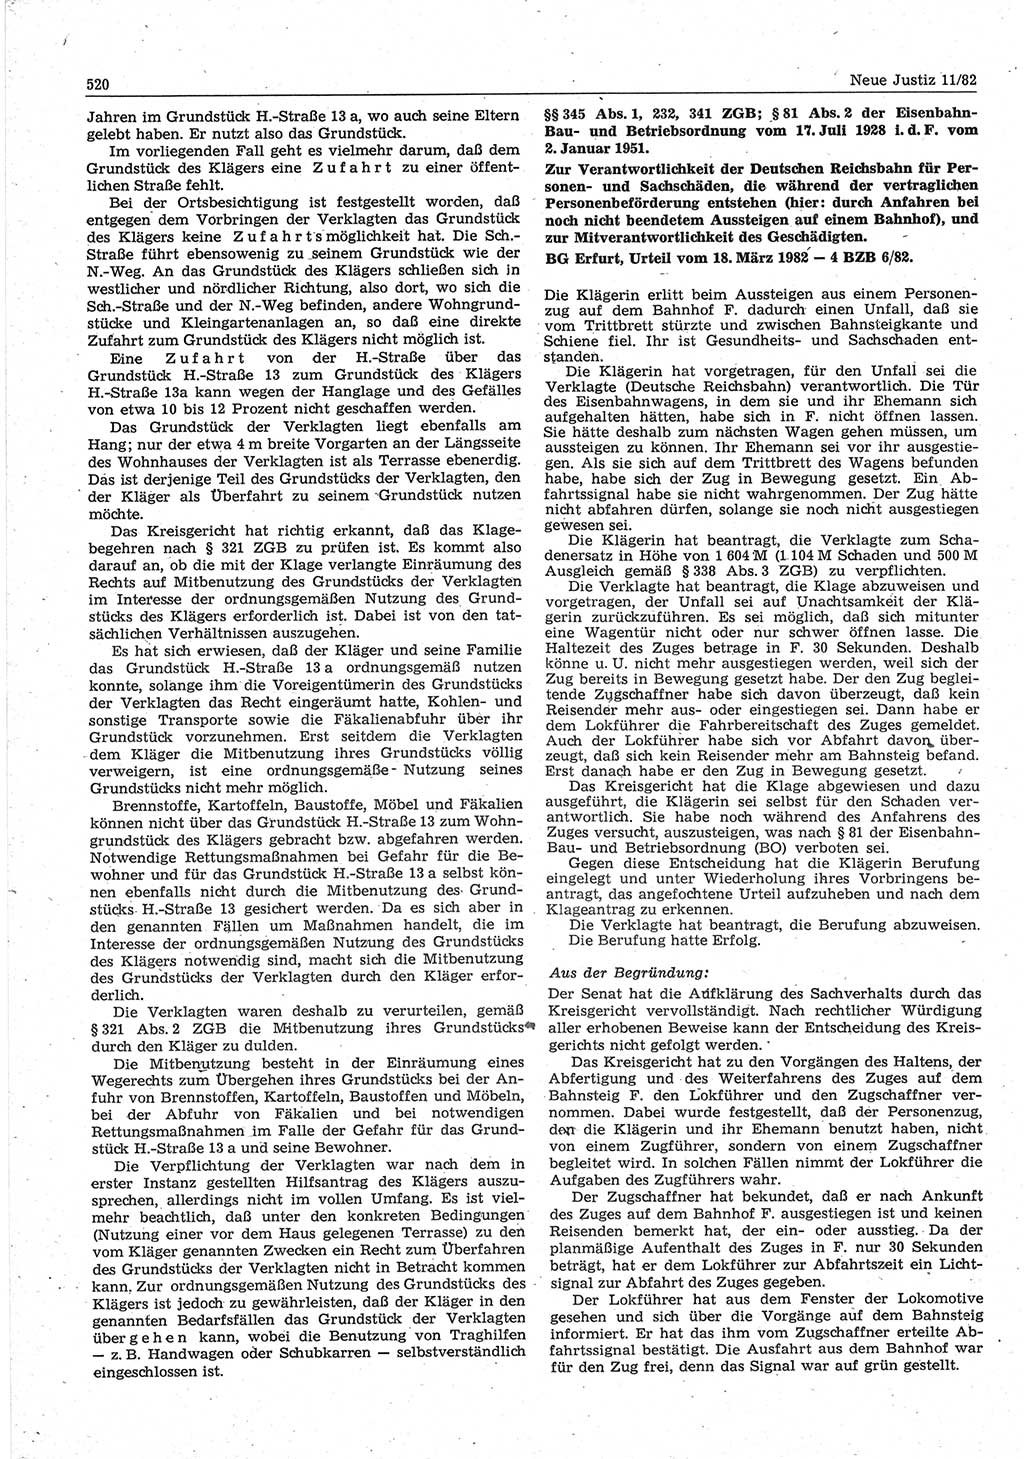 Neue Justiz (NJ), Zeitschrift für sozialistisches Recht und Gesetzlichkeit [Deutsche Demokratische Republik (DDR)], 36. Jahrgang 1982, Seite 520 (NJ DDR 1982, S. 520)